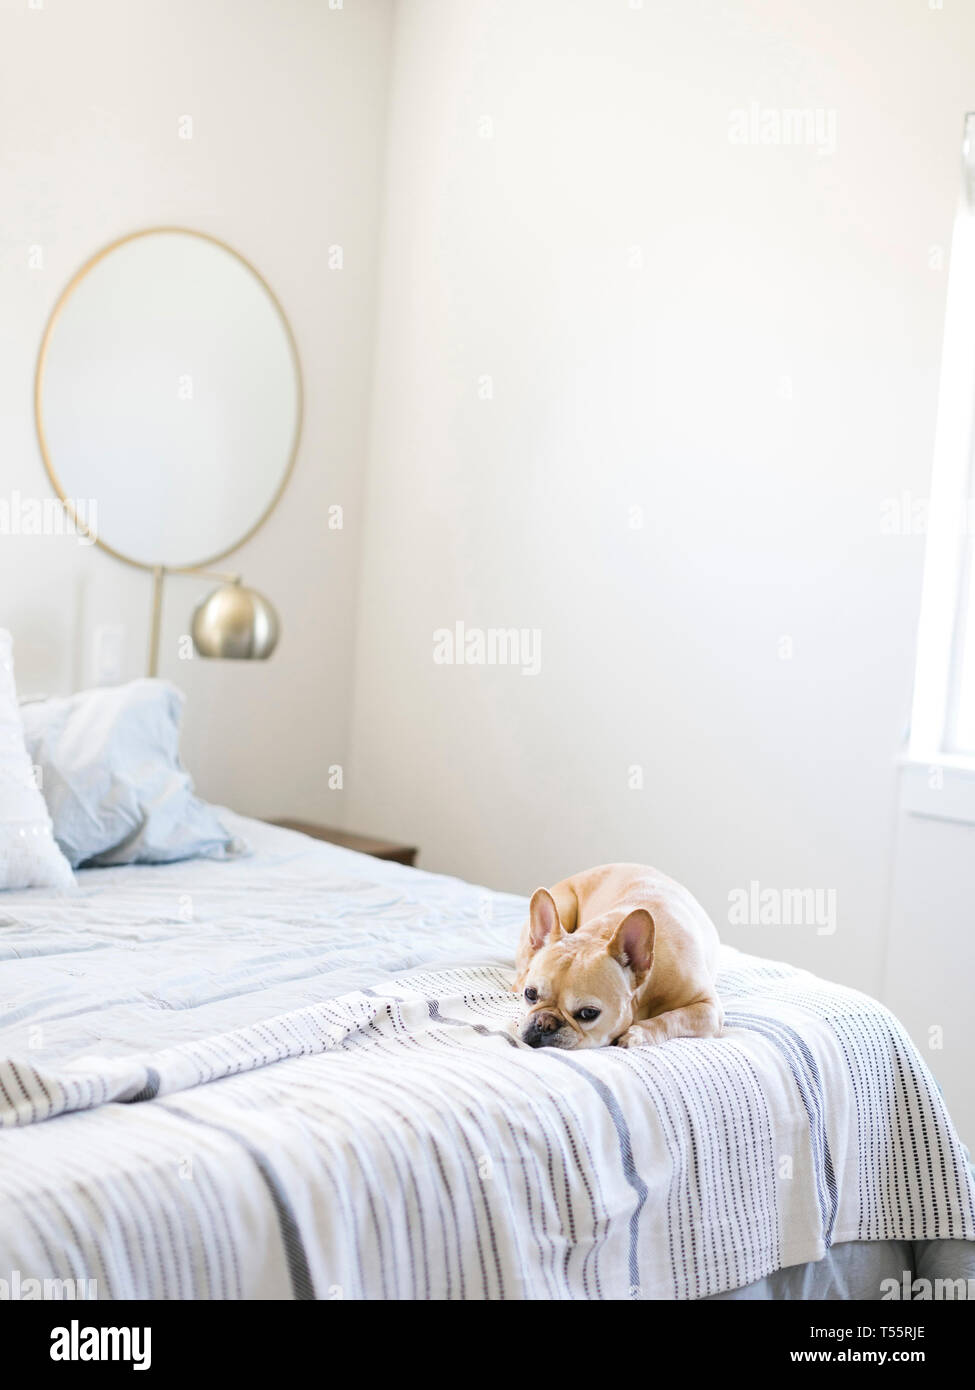 Dog lying on bed Stock Photo